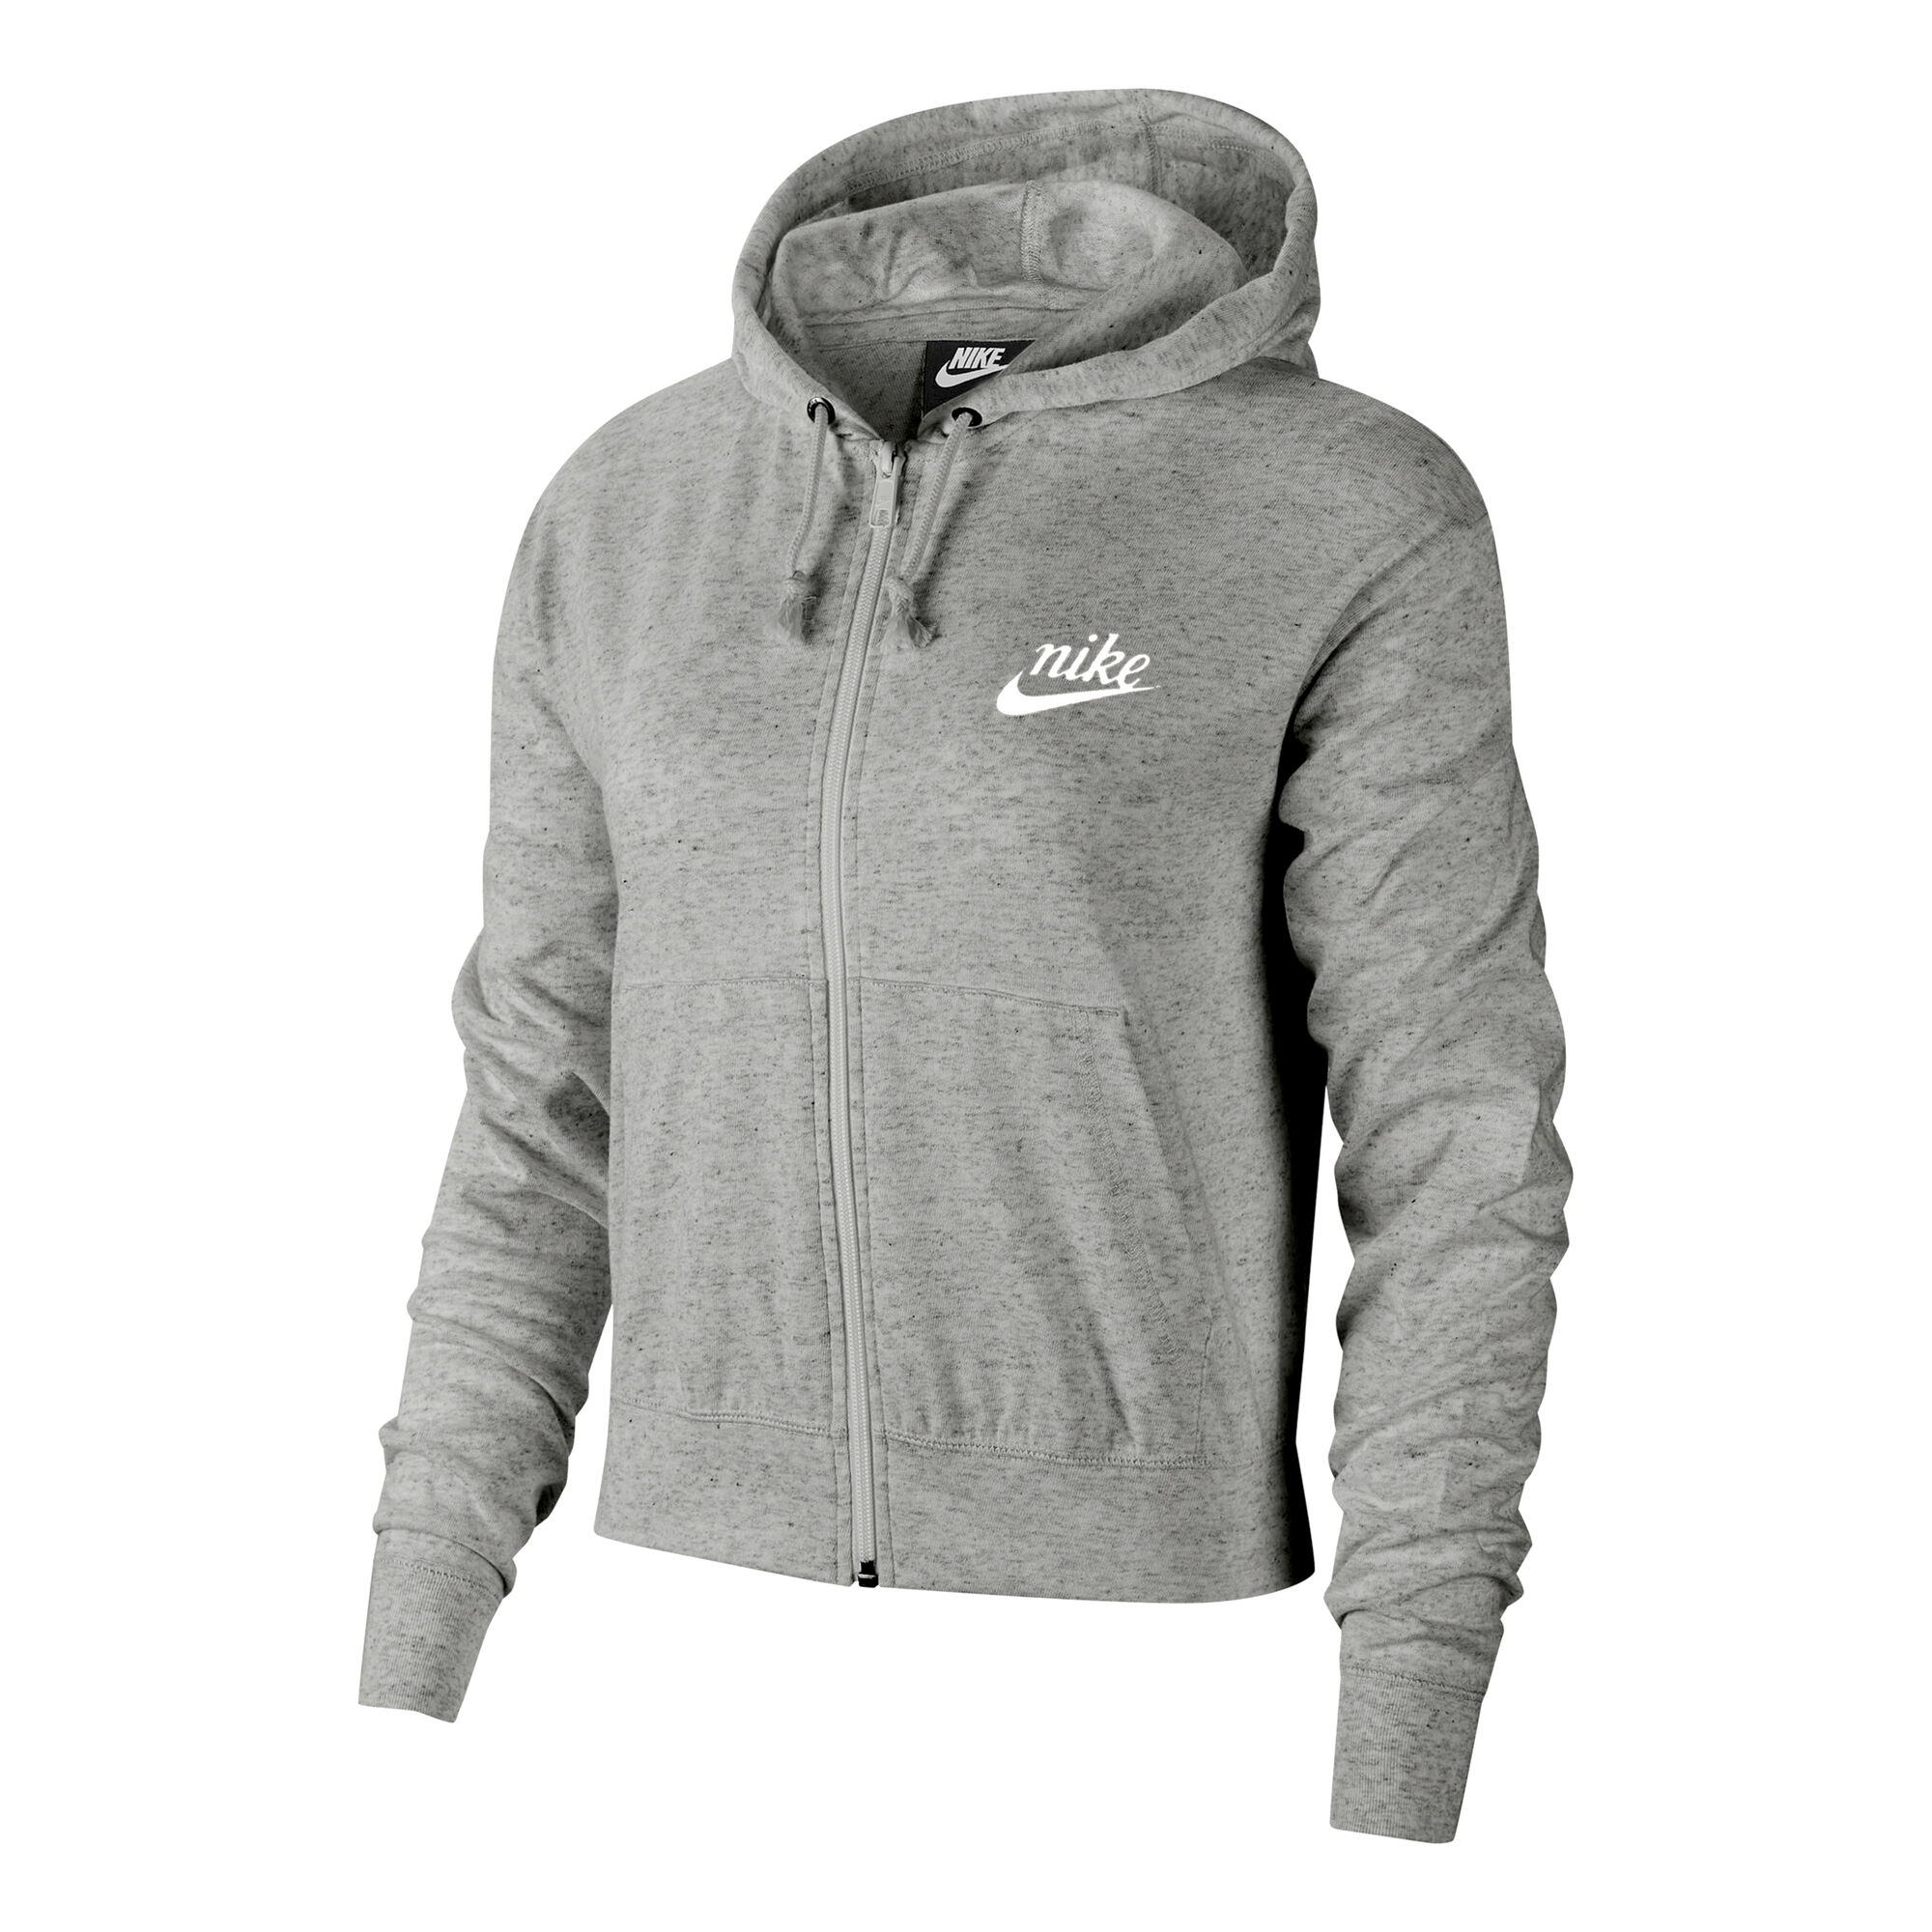 buy Nike Sportswear Gym Vintage Zip Hoodie Women - Grey, White online |  Tennis-Point